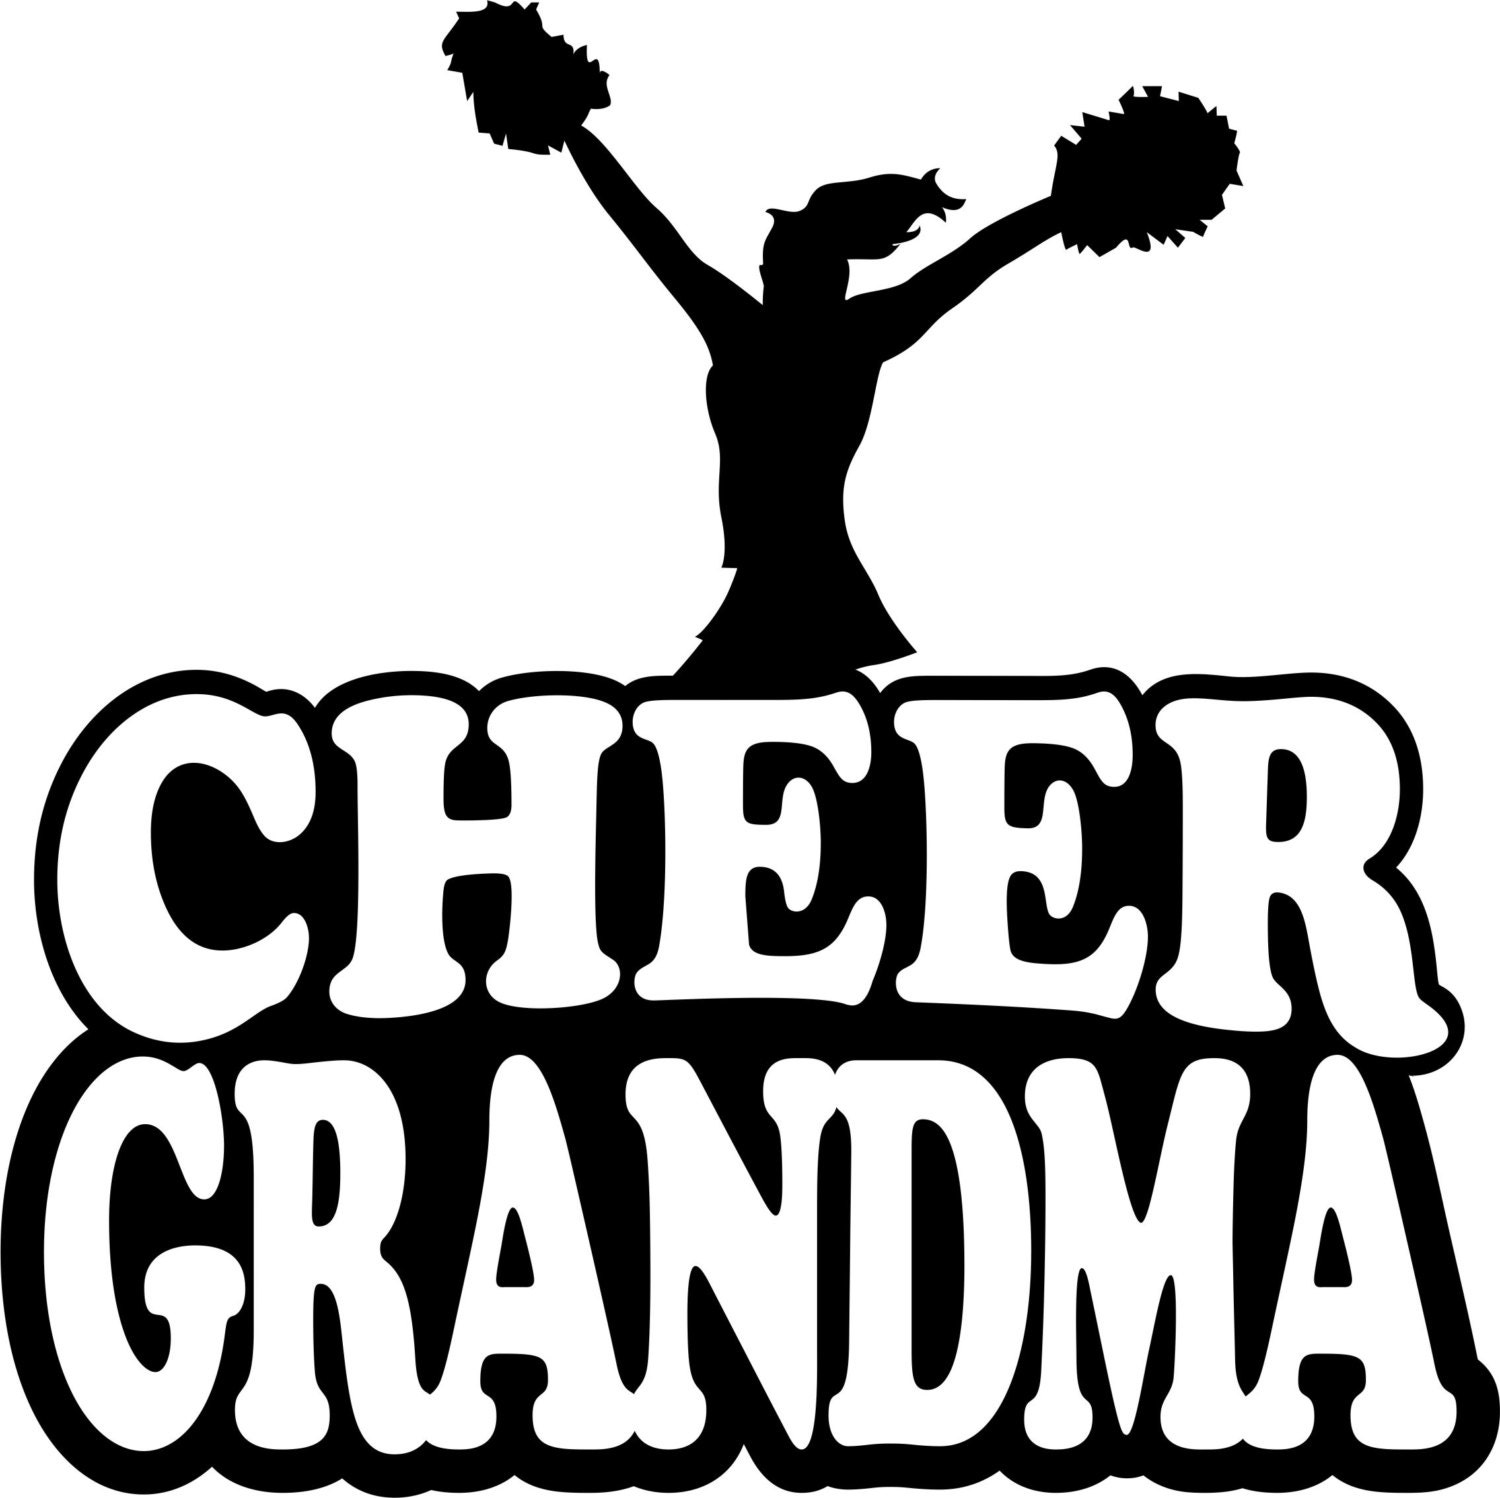 Download Cheer Grandma Hoodie/ Cheer Grandma Sweatshirt/ Cheer Grandma